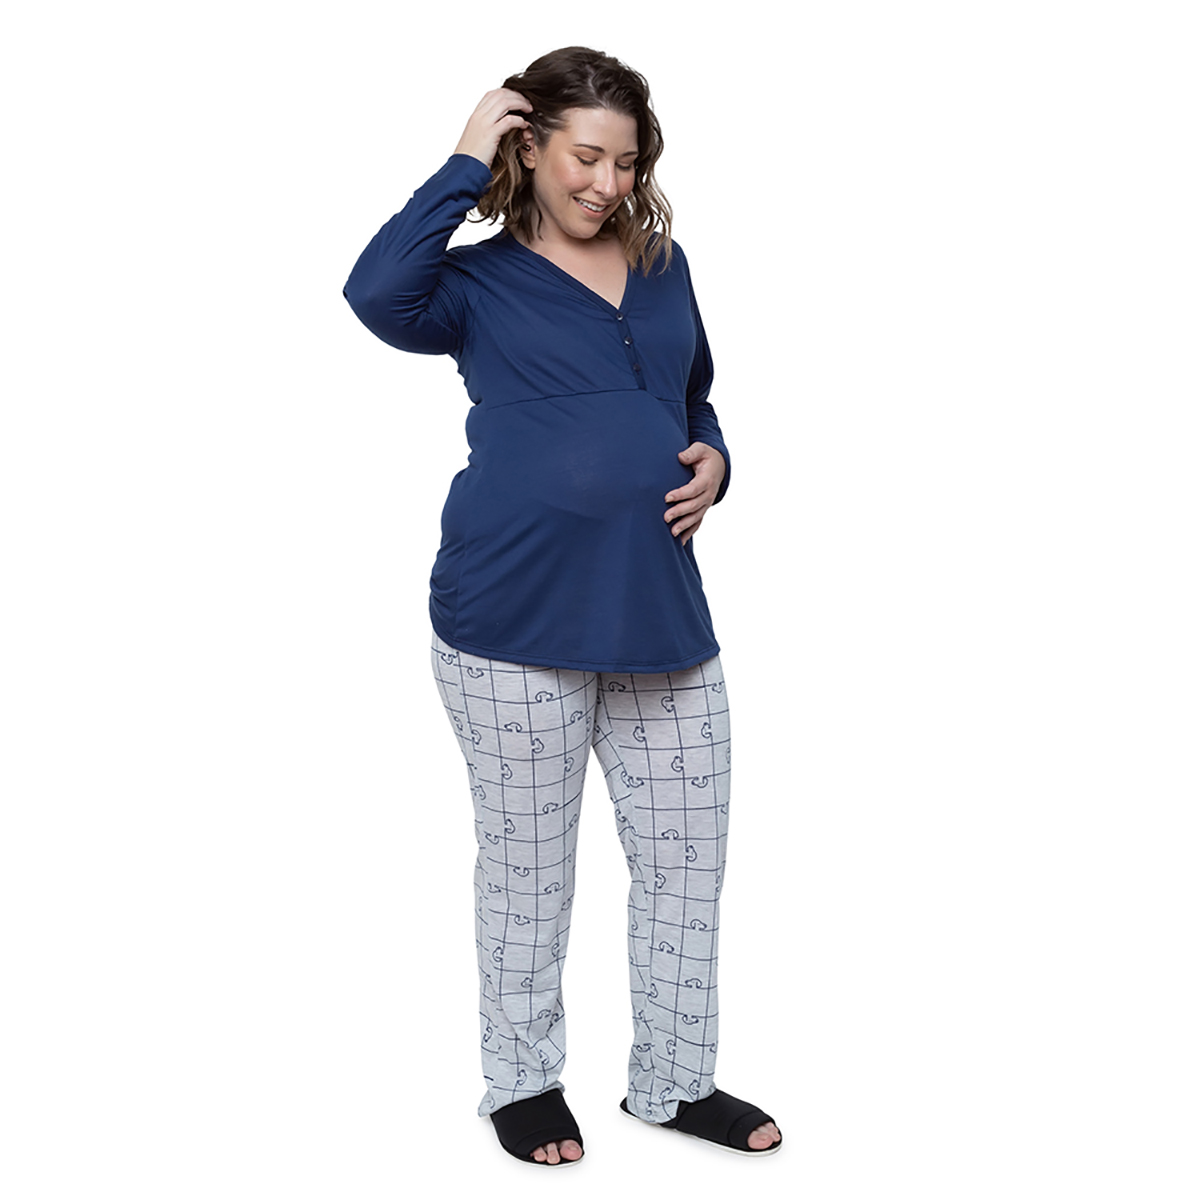 Pijama Longo Maternidade com Botões estampa Snoopy Linda Gestante